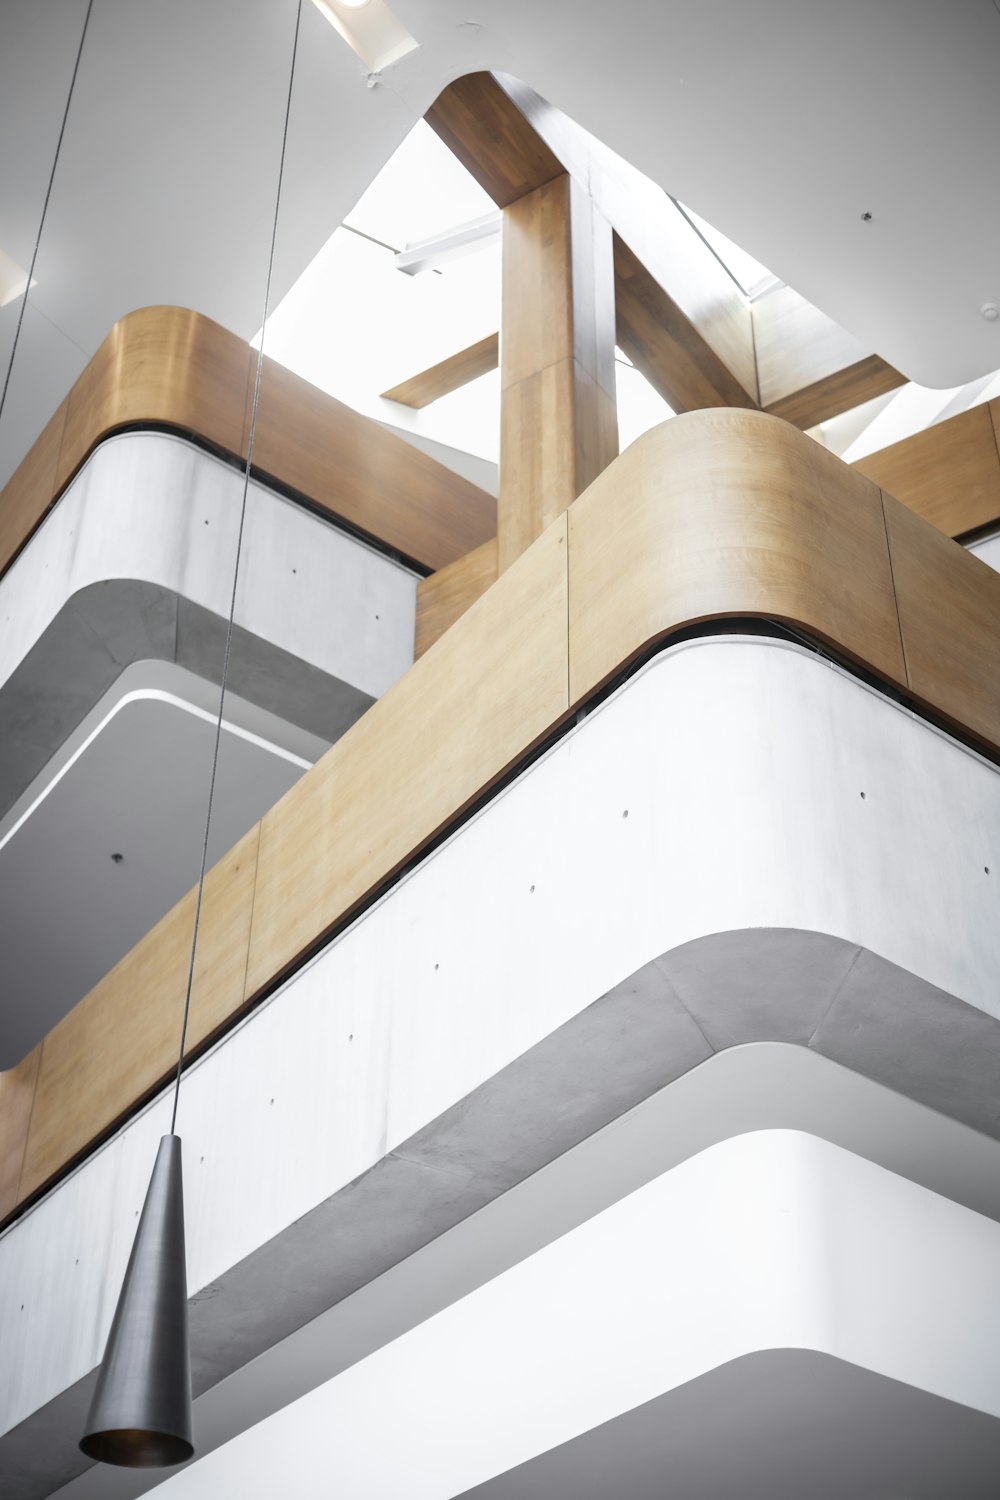 유리 난간이있는 계단 사진 – Unsplash의 무료 리처드 아이비 빌딩 이미지